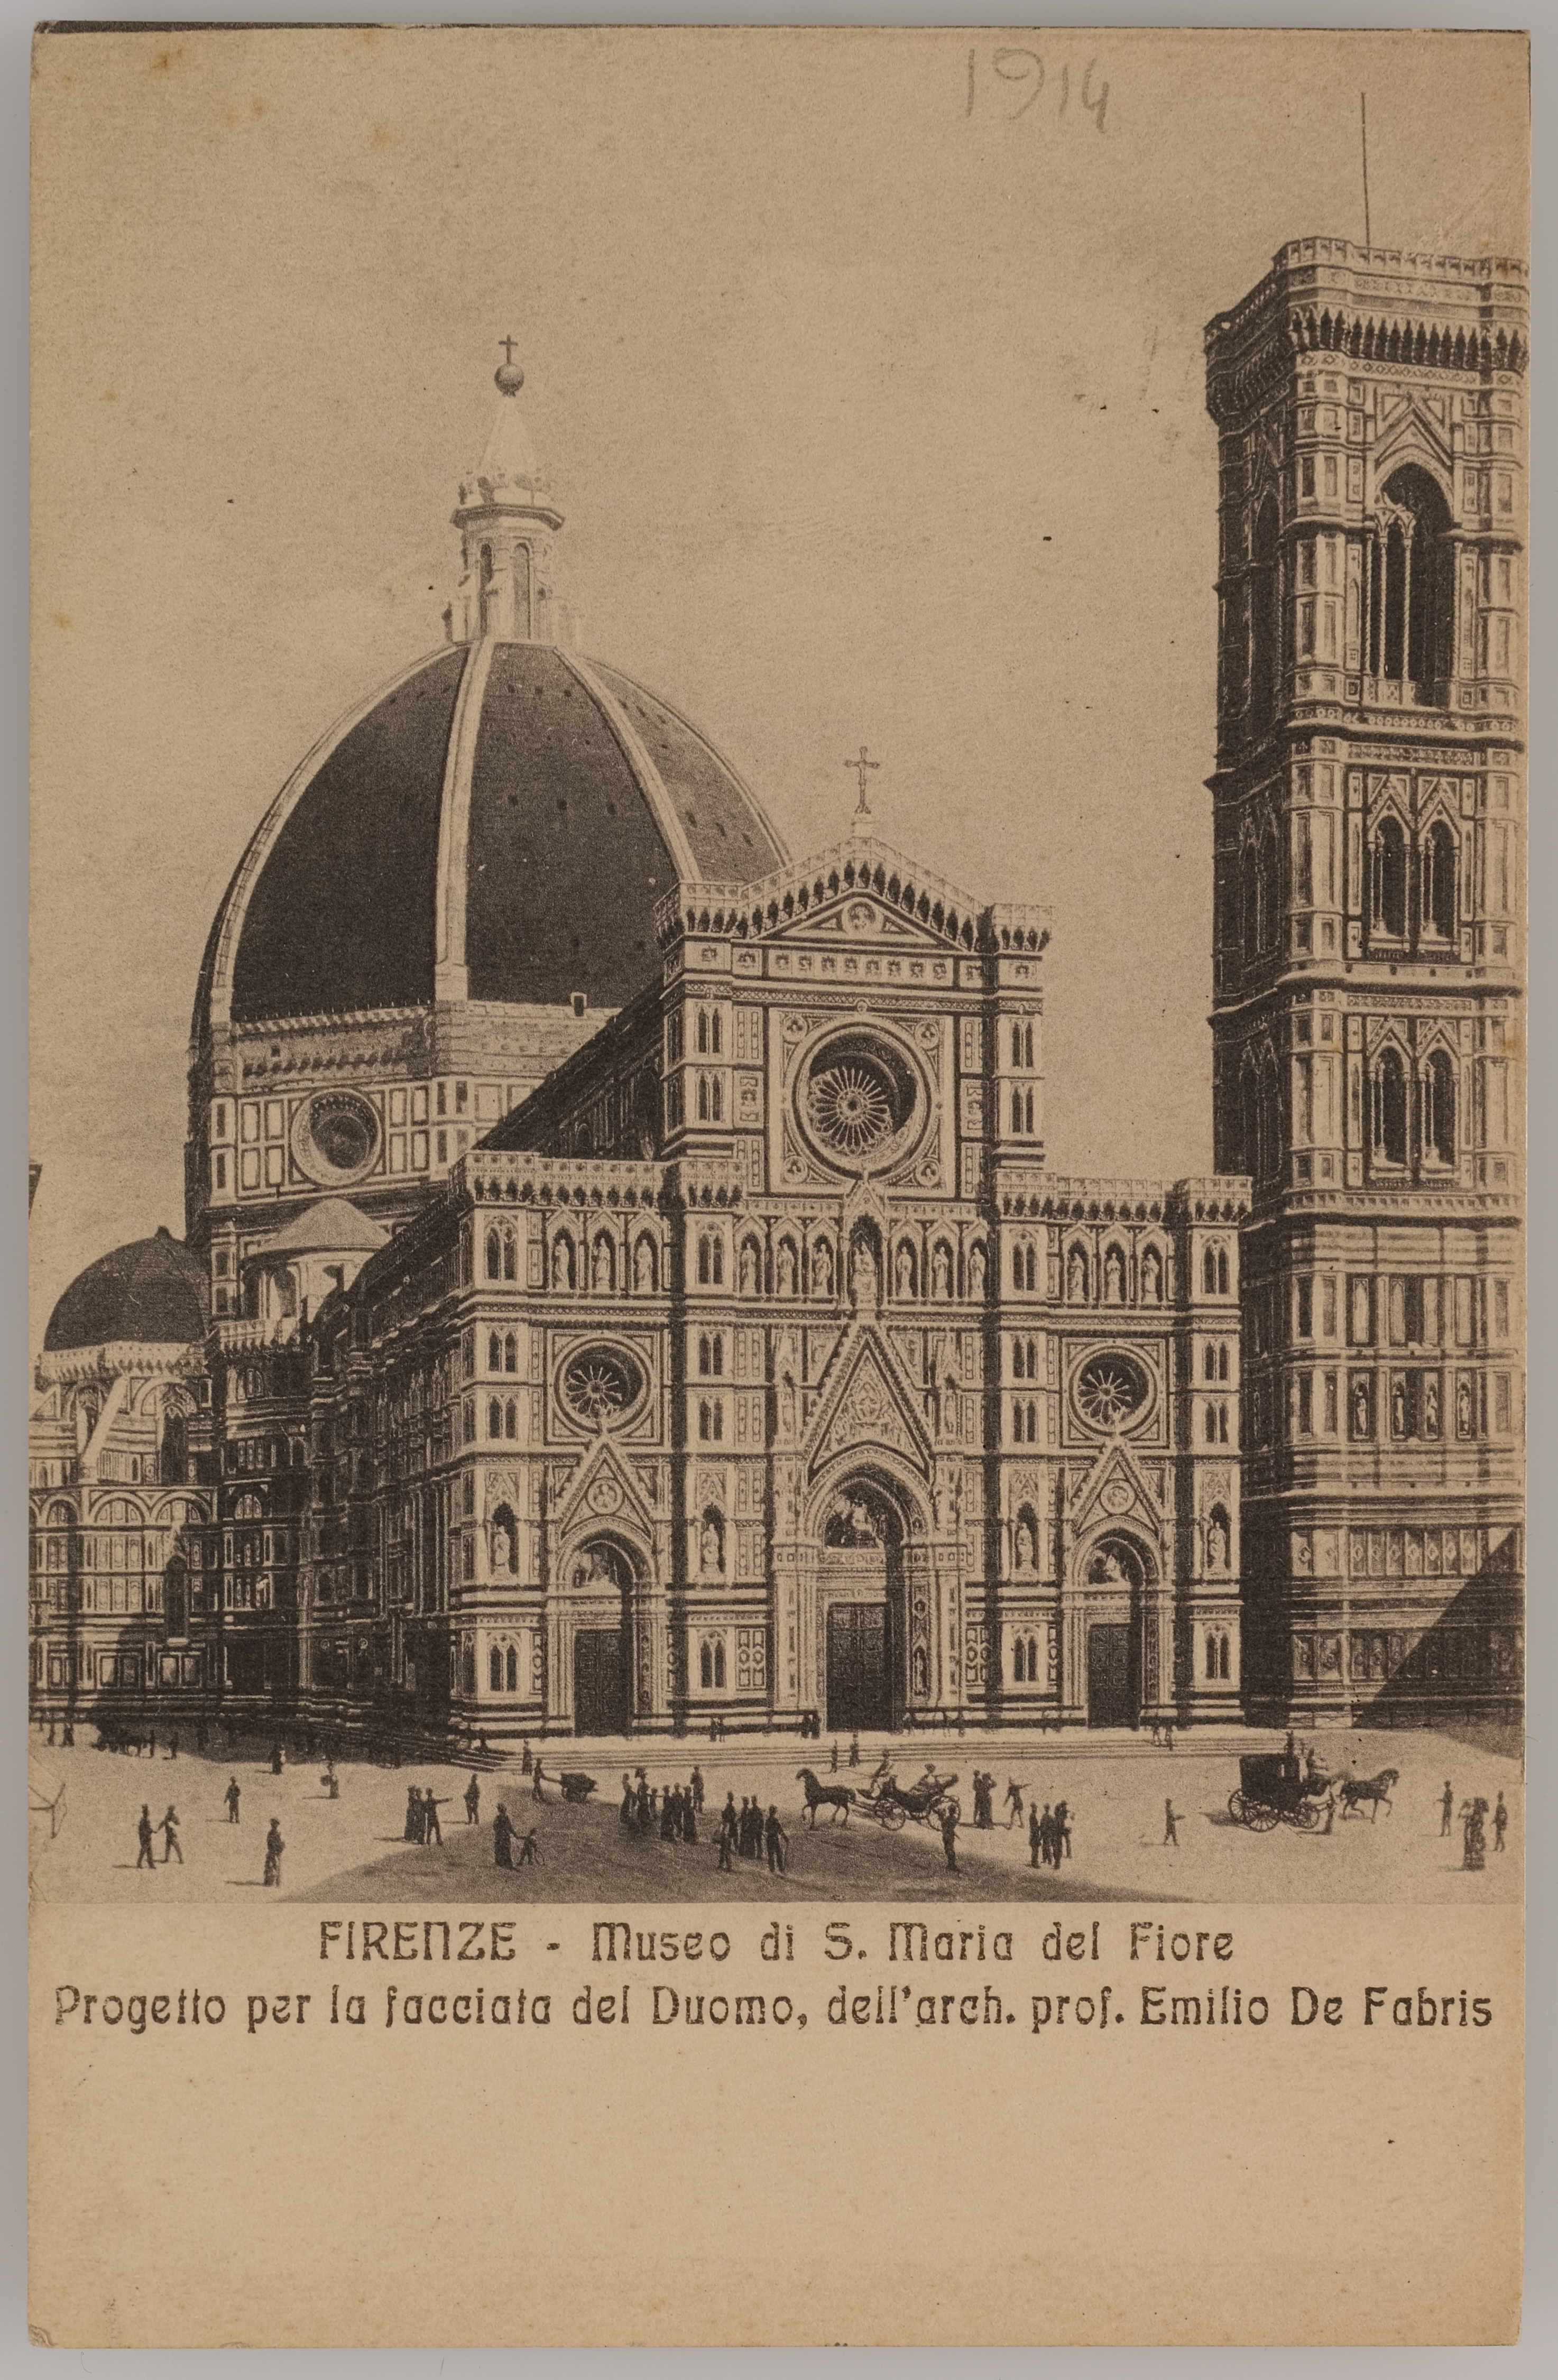 Fotografo non identificato, Progetto per la facciata del Duomo di Firenze, 1914, stampa fotomeccanica/ cartolina postale, DVC000433